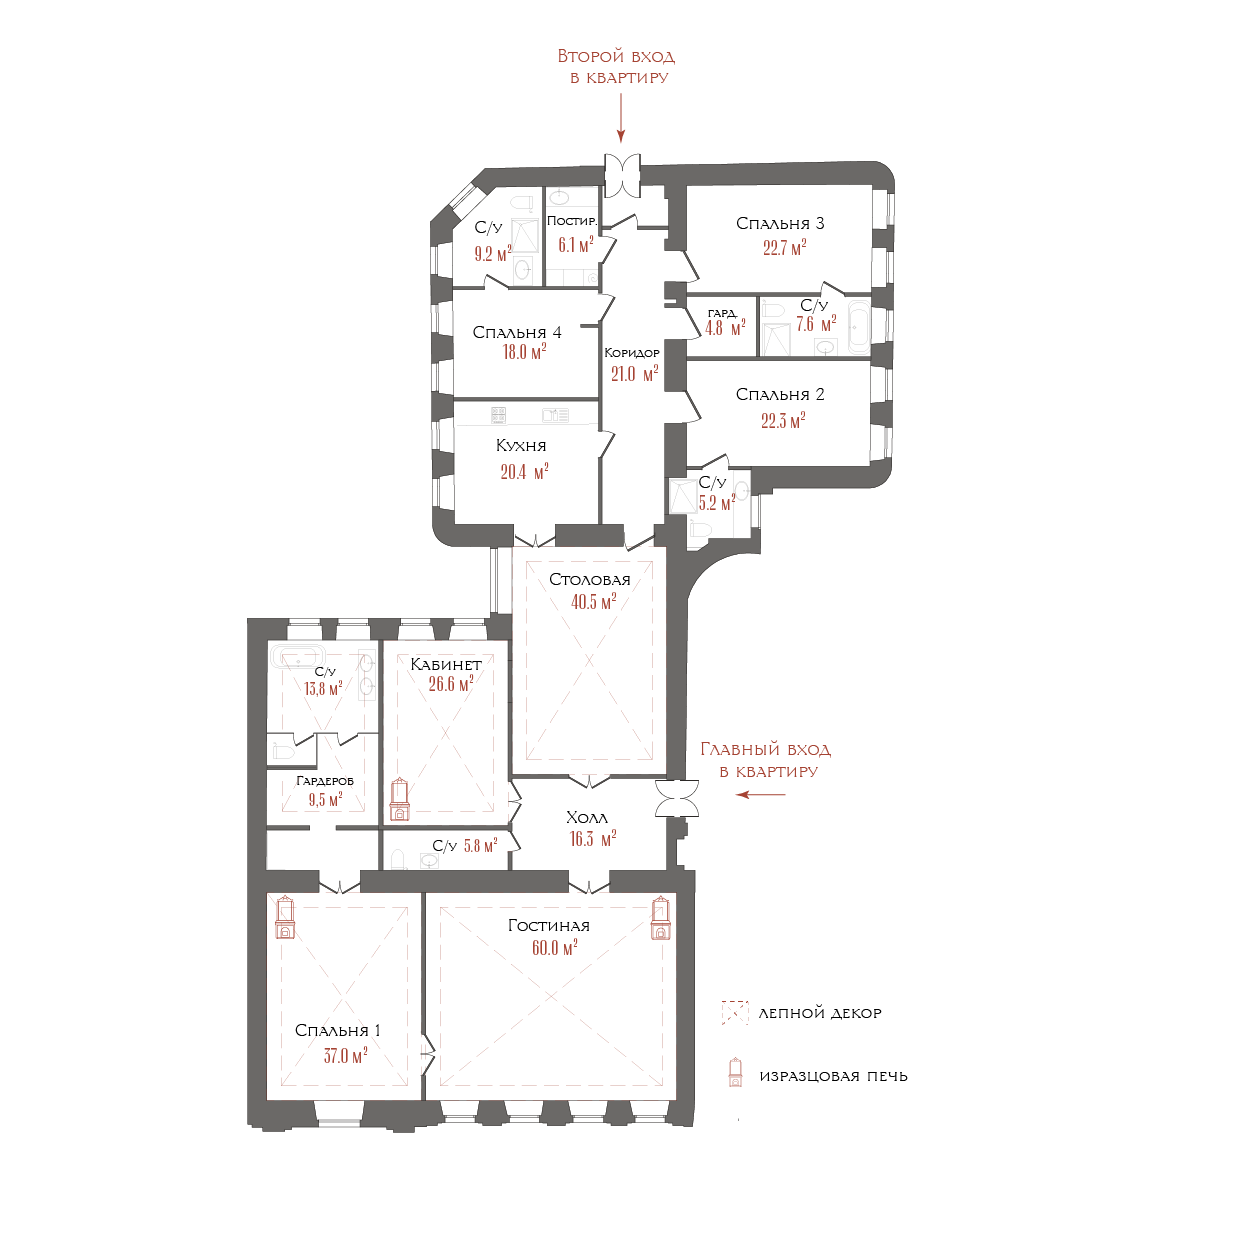 7-комнатная квартира  №8 в Три грации: 349.57 м², этаж 4 - купить в Санкт-Петербурге